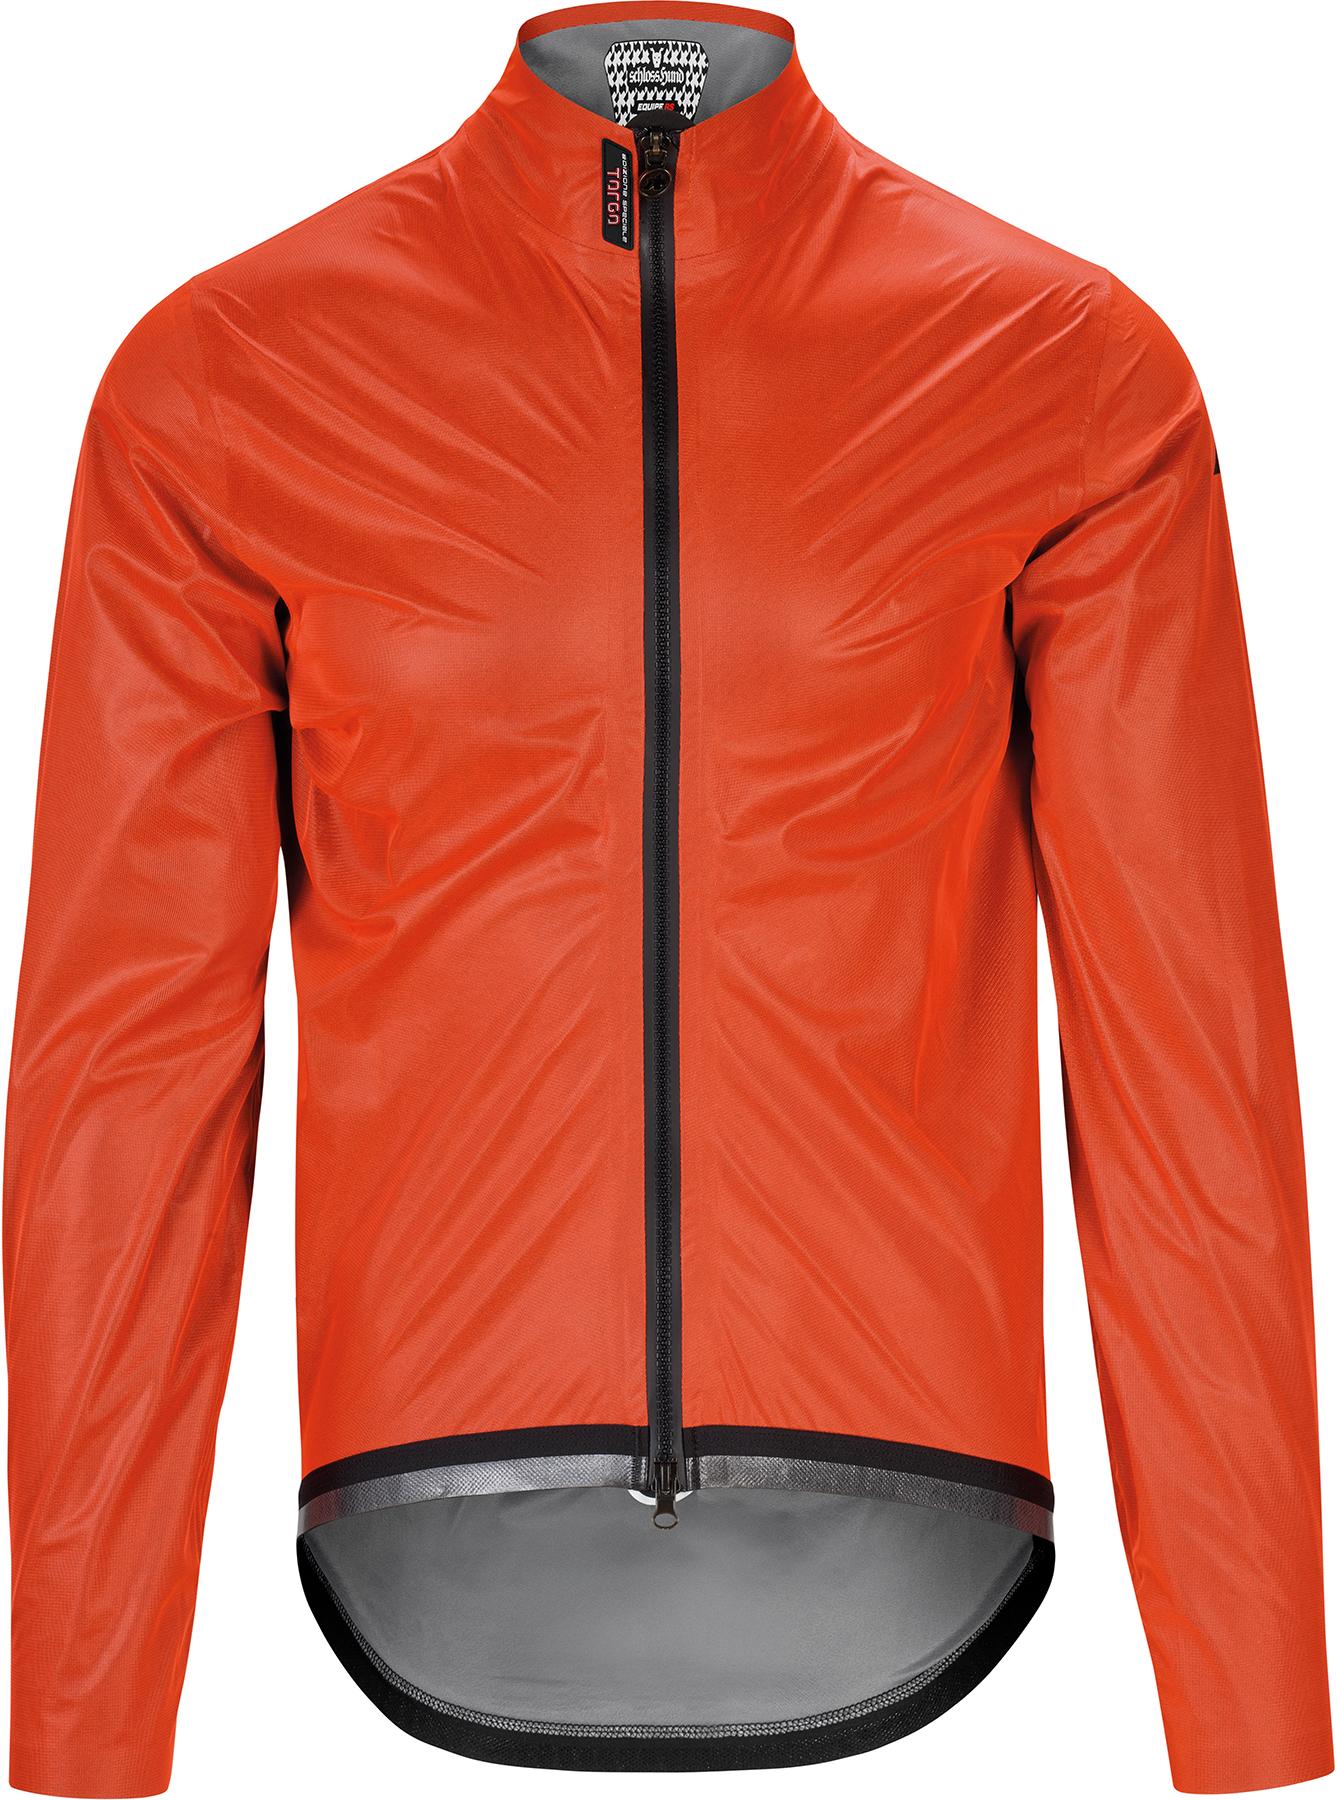 Assos Equipe Rs Targa Cycling Rain Jacket - Propeller Orange